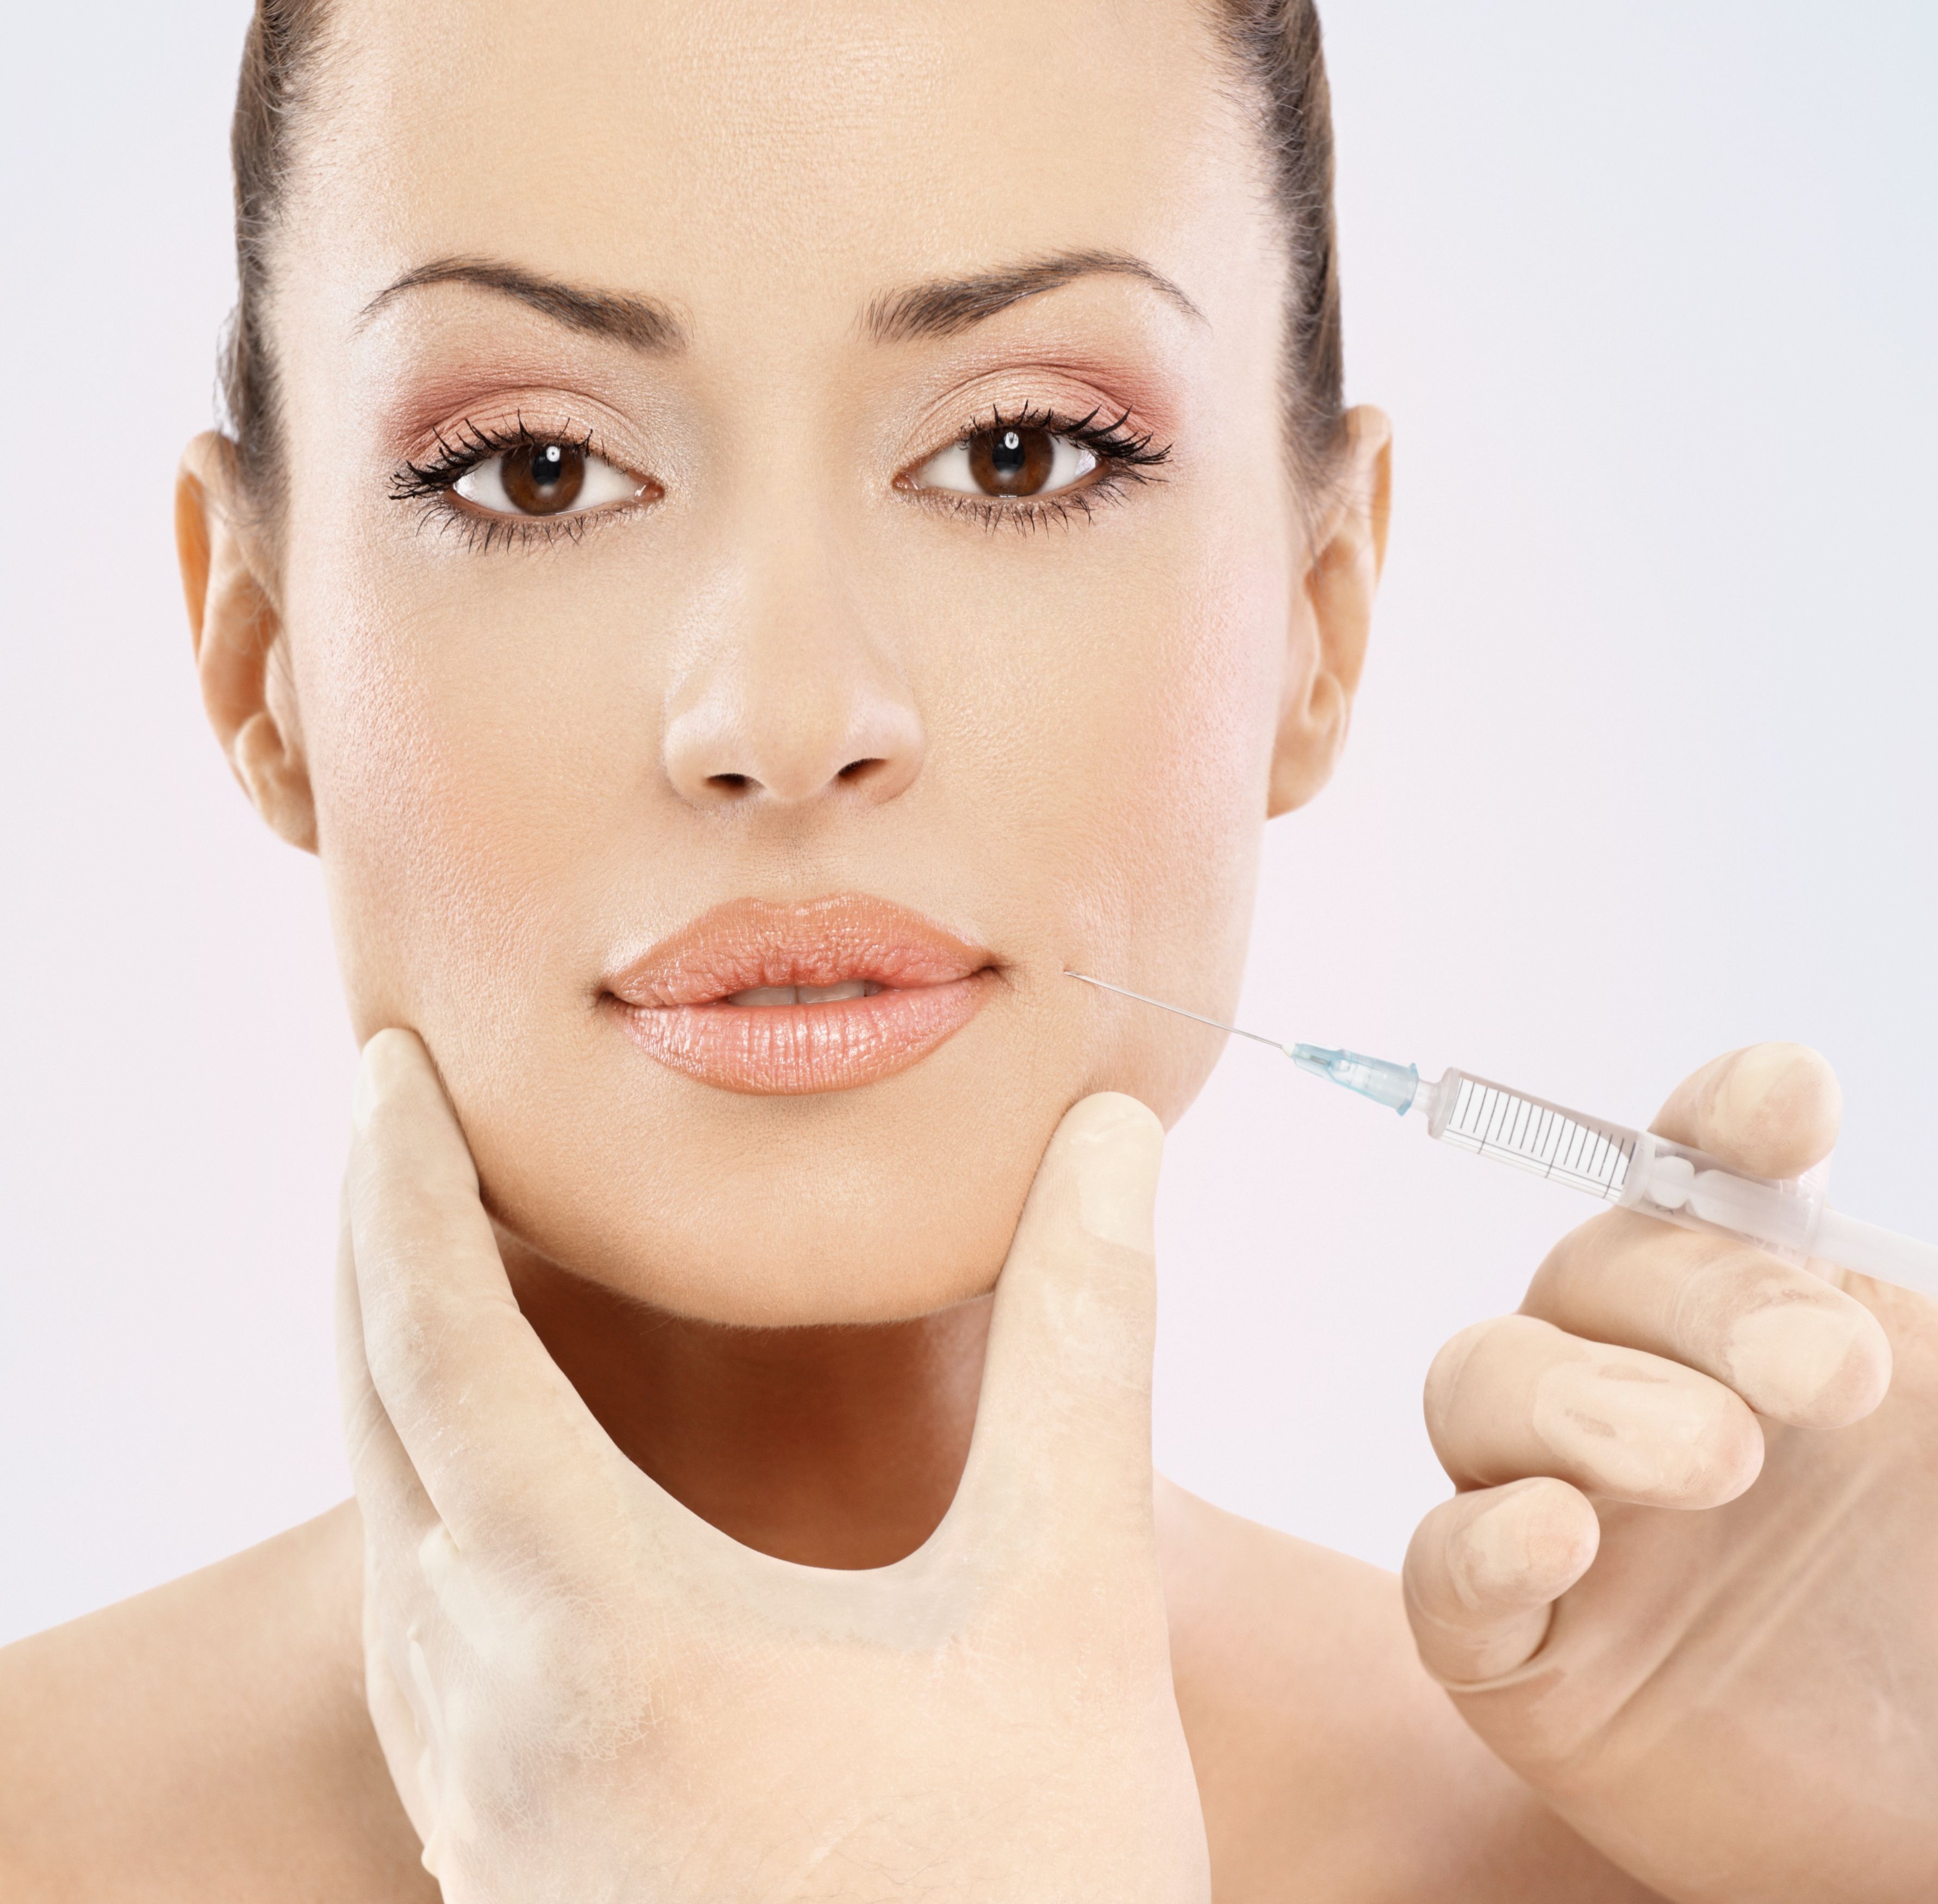 Hyaluronzuur op de lippen: een doeltreffende werking tegen